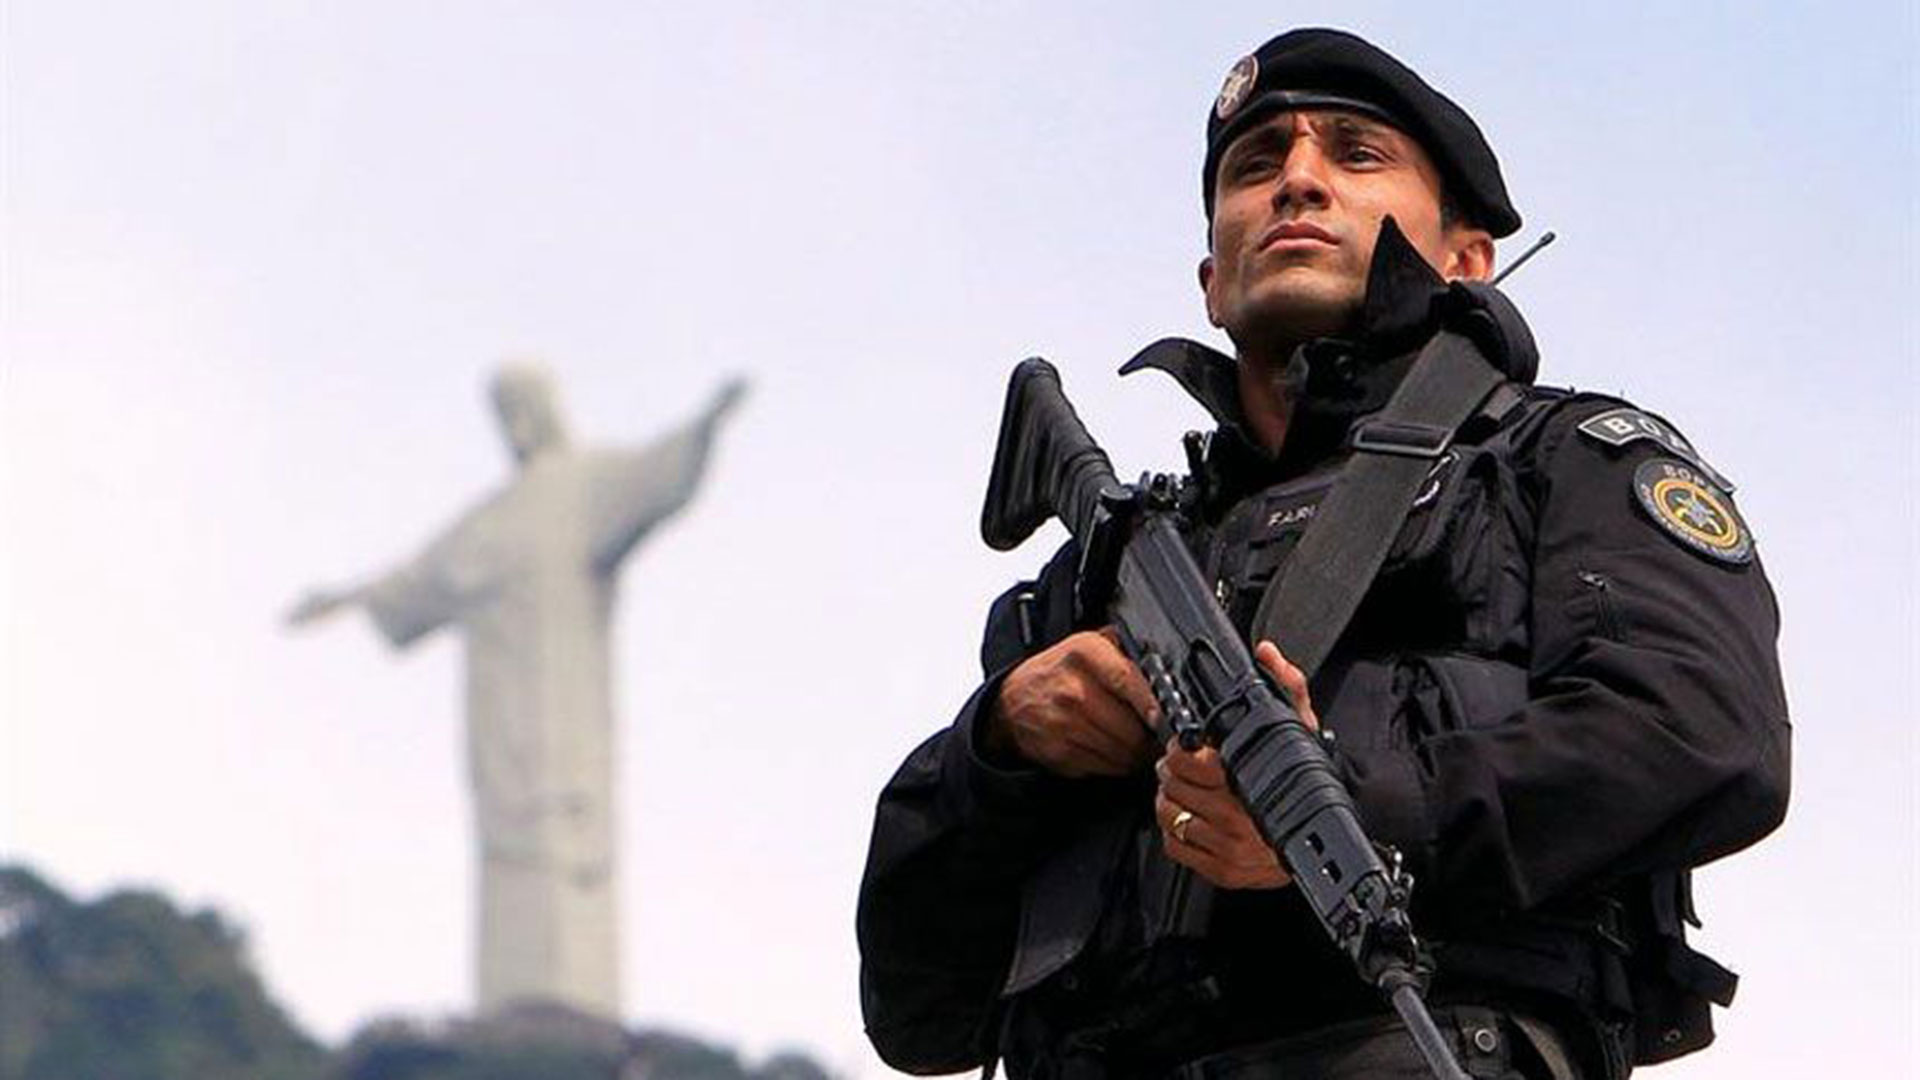 Foto de archivo de un agente policial en Río de Janeiro